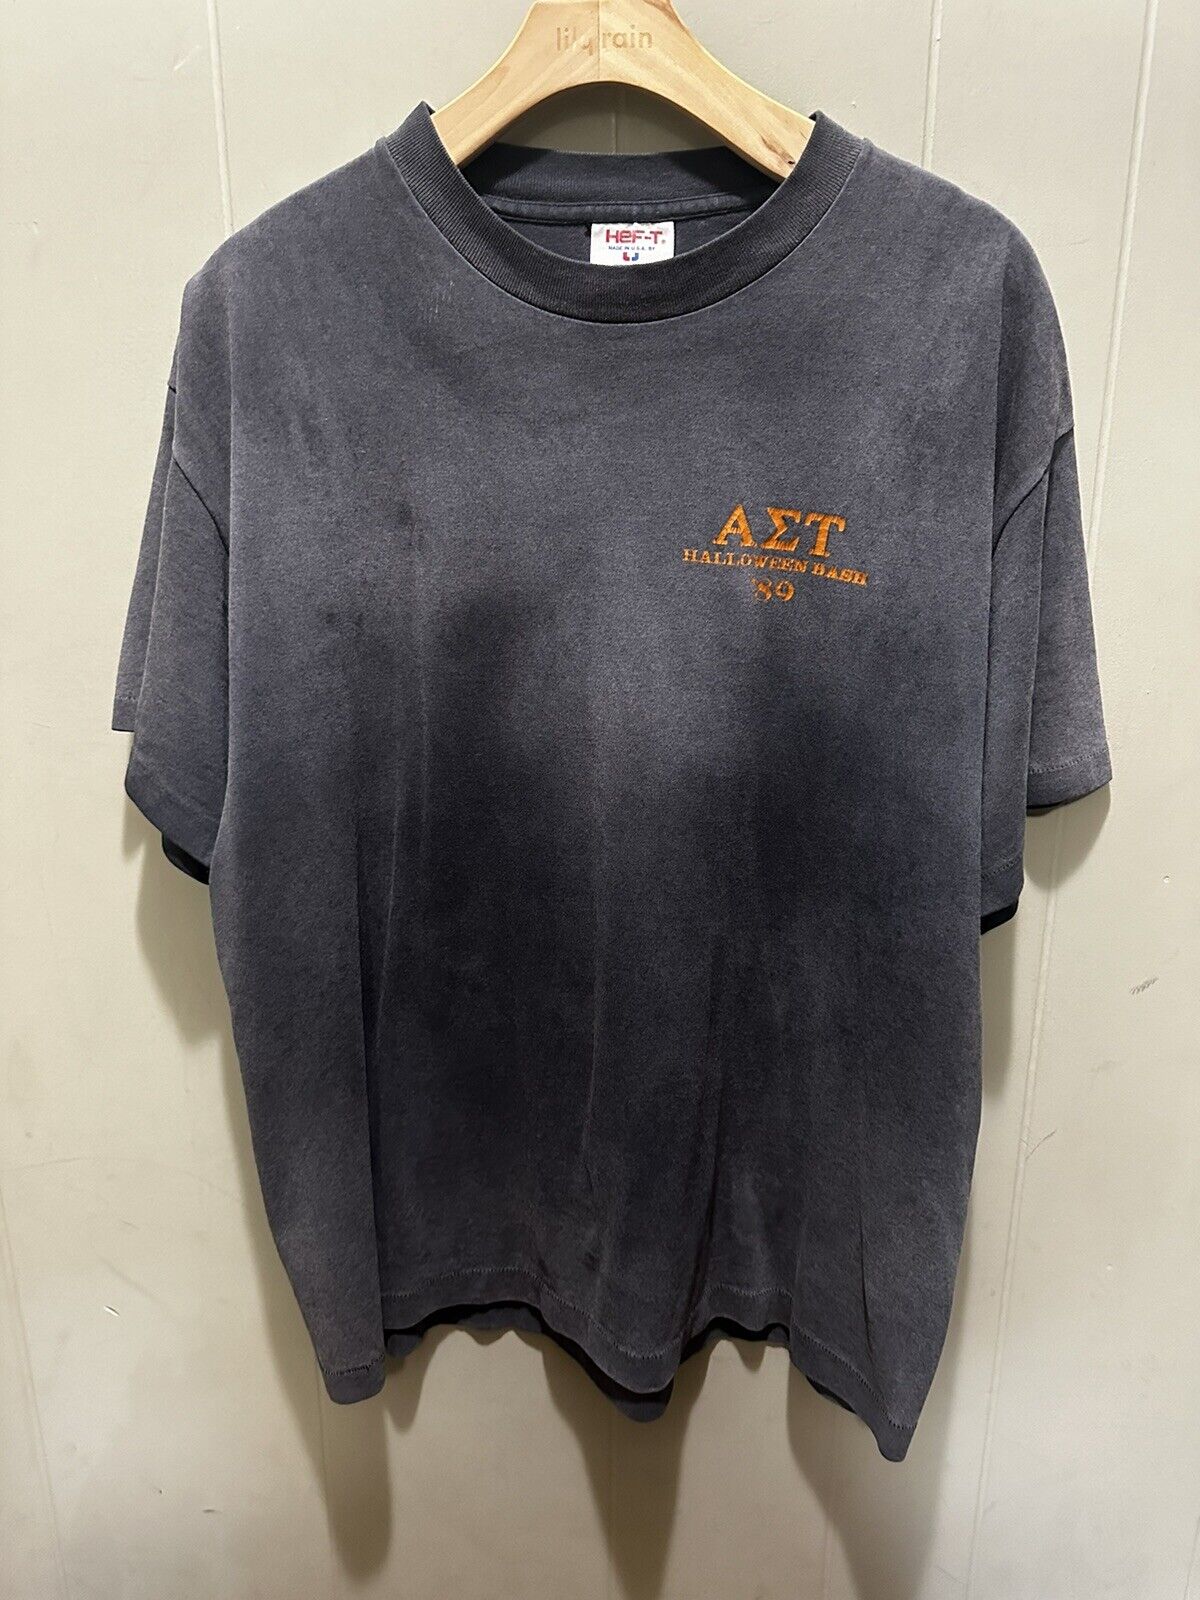 Vintage Alpha Sigma Tau Fraternity Halloween Bash 1989 Shirt Black Sz XL HEF-T